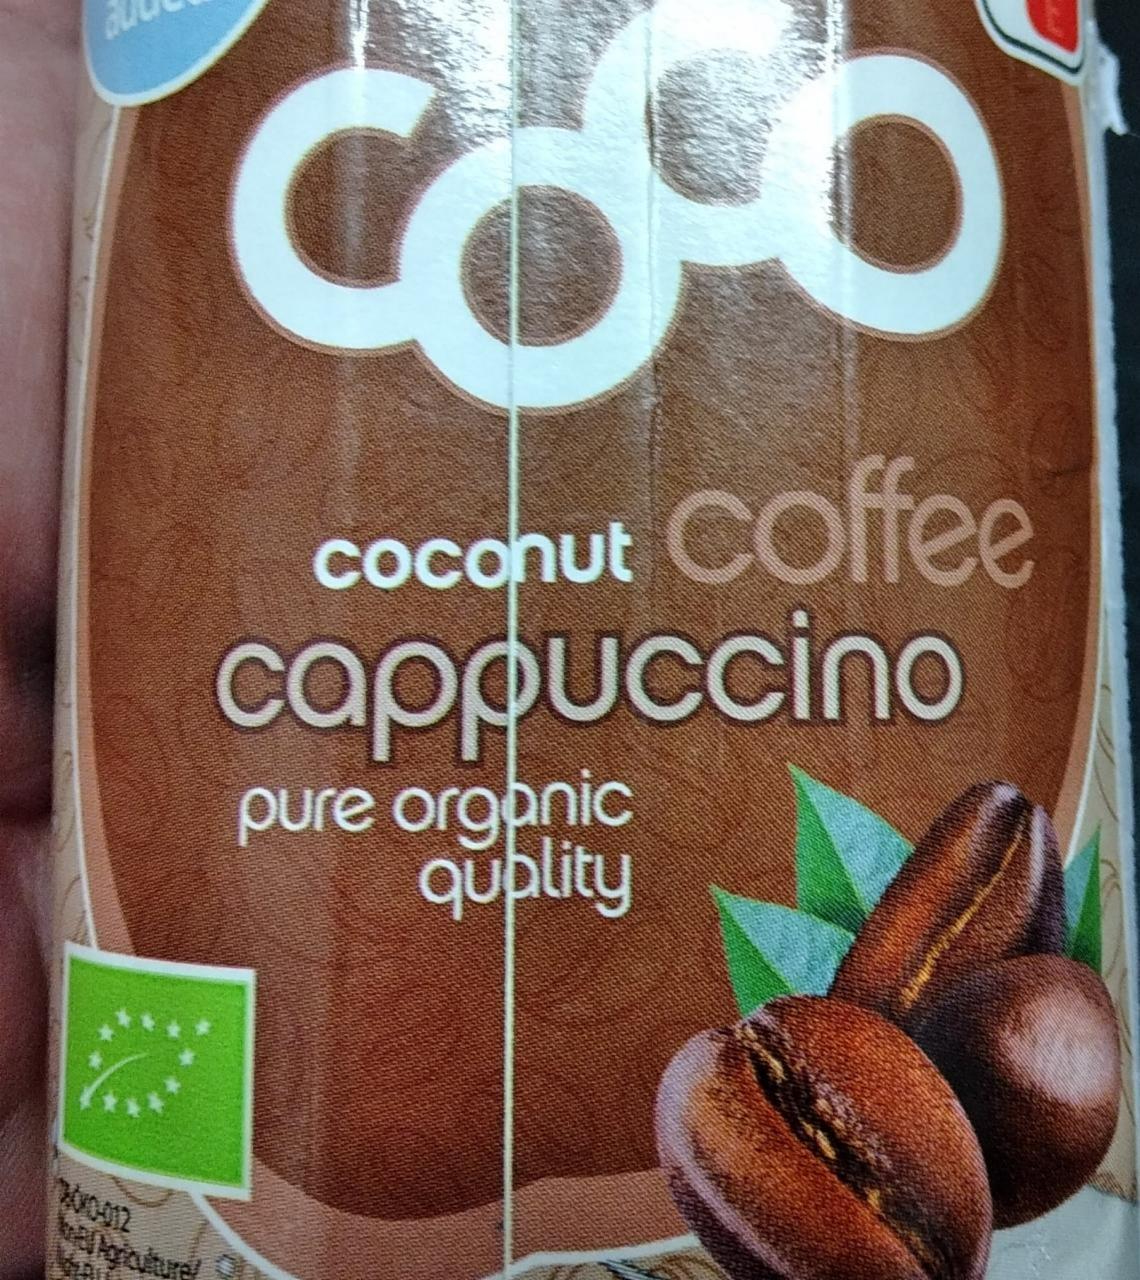 Fotografie - Coconut coffee cappuccino Coco